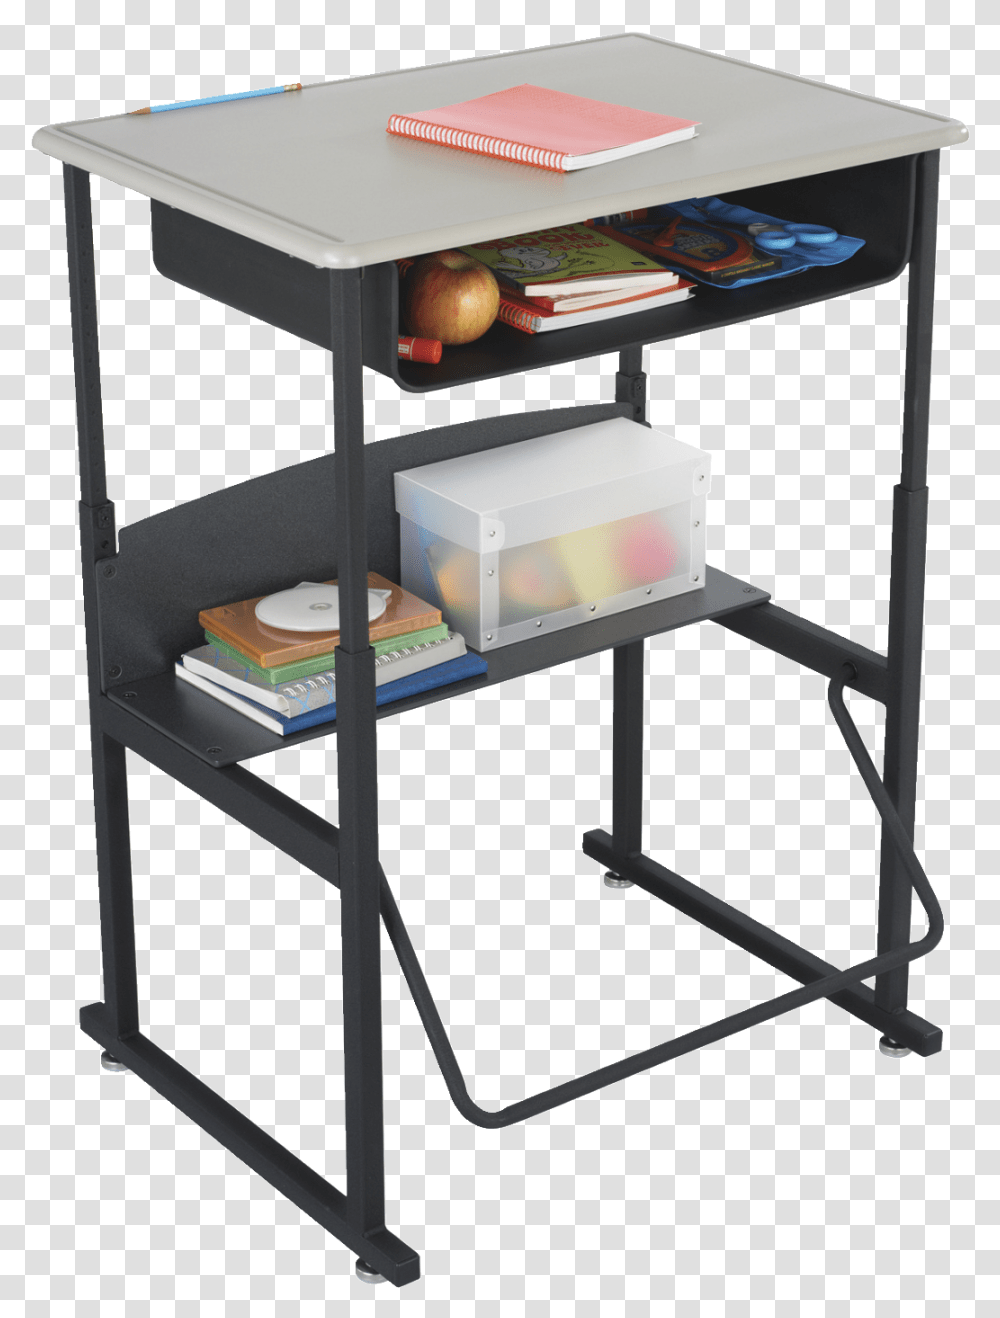 Safco Alphabetter Desk With Bookboxx Student Desks Standing Desk For School, Furniture, Shelf, Table, Indoors Transparent Png